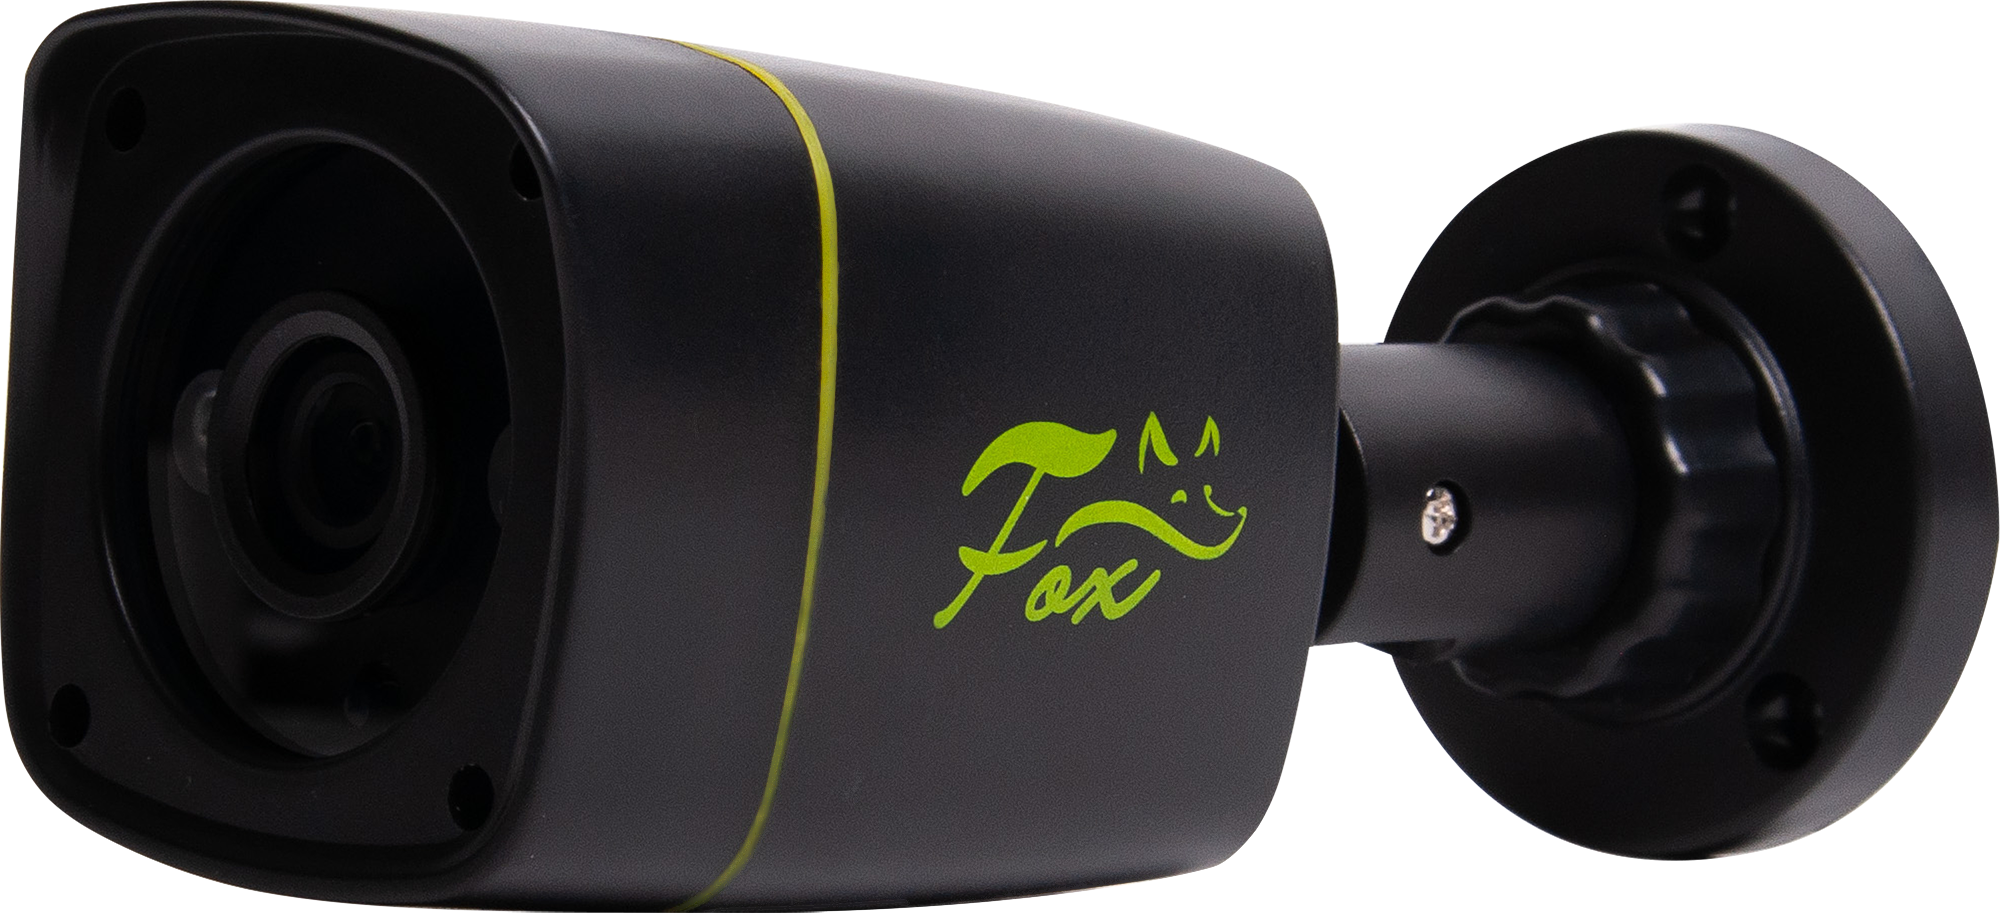 Комплект для видеонаблюдения Fox FX-KB 2 МП 1 камера цвет черный. Fox FX-kb2.